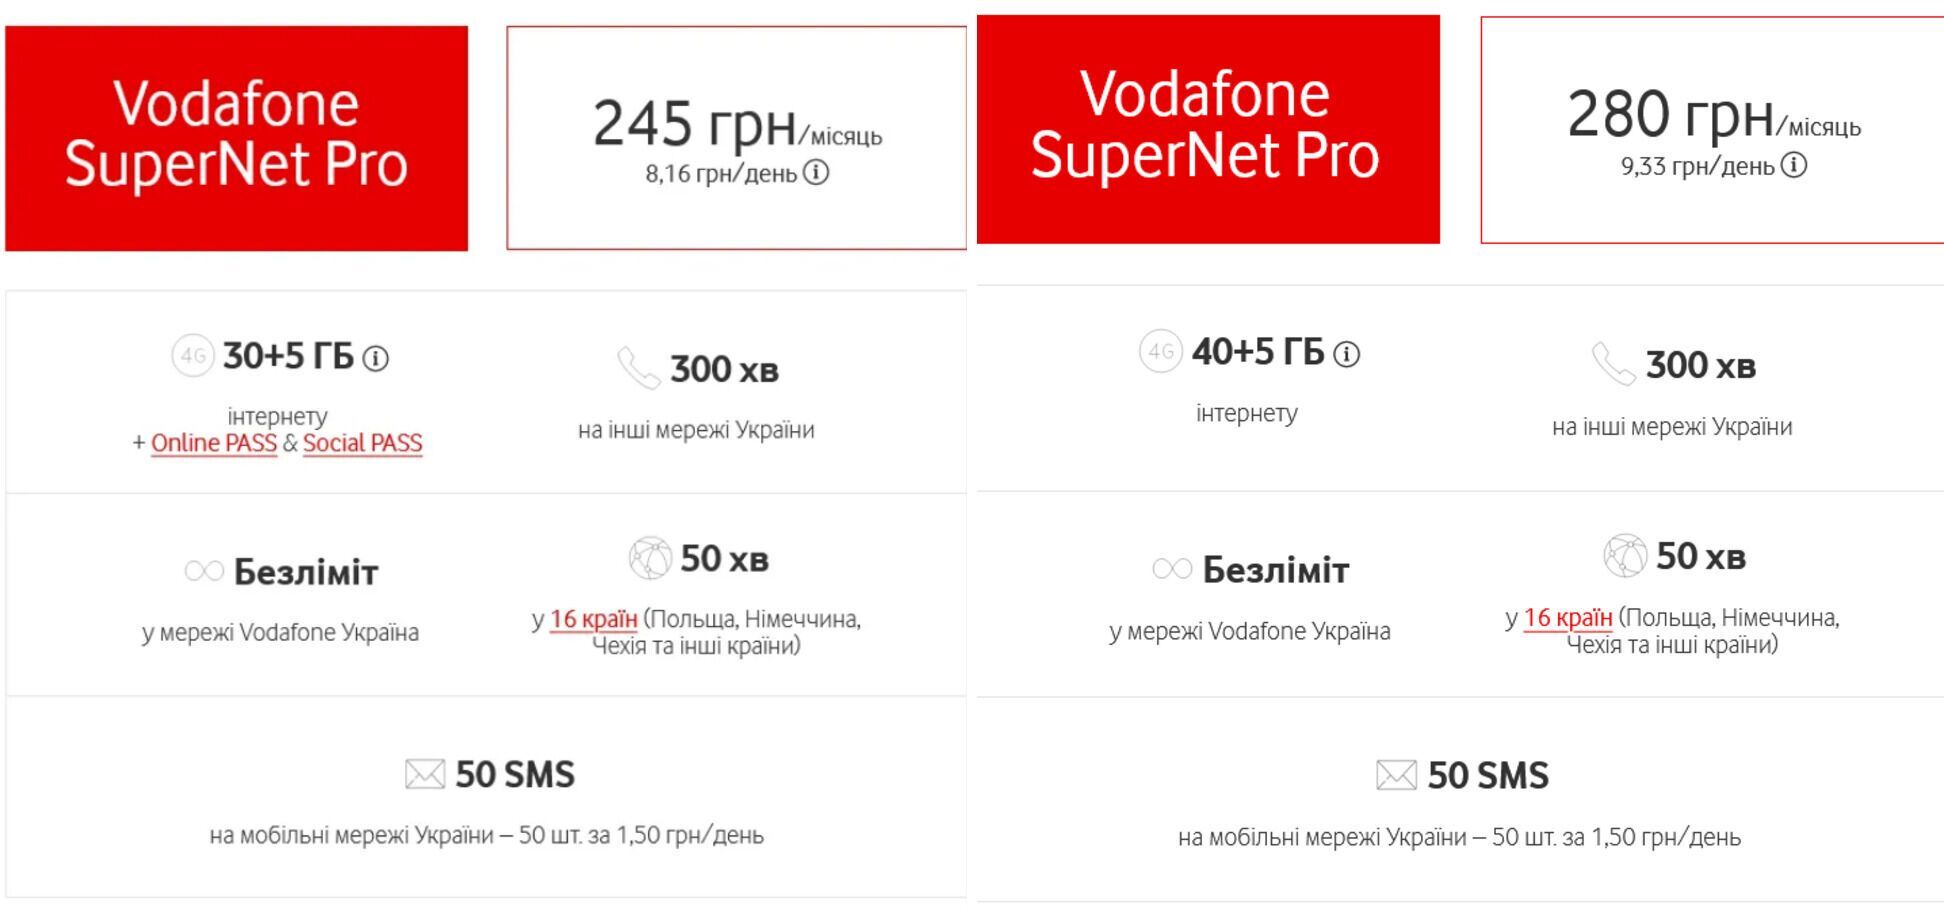 Вартість тарифу SuperNet Pro збільшилась на 35 грн/місяць